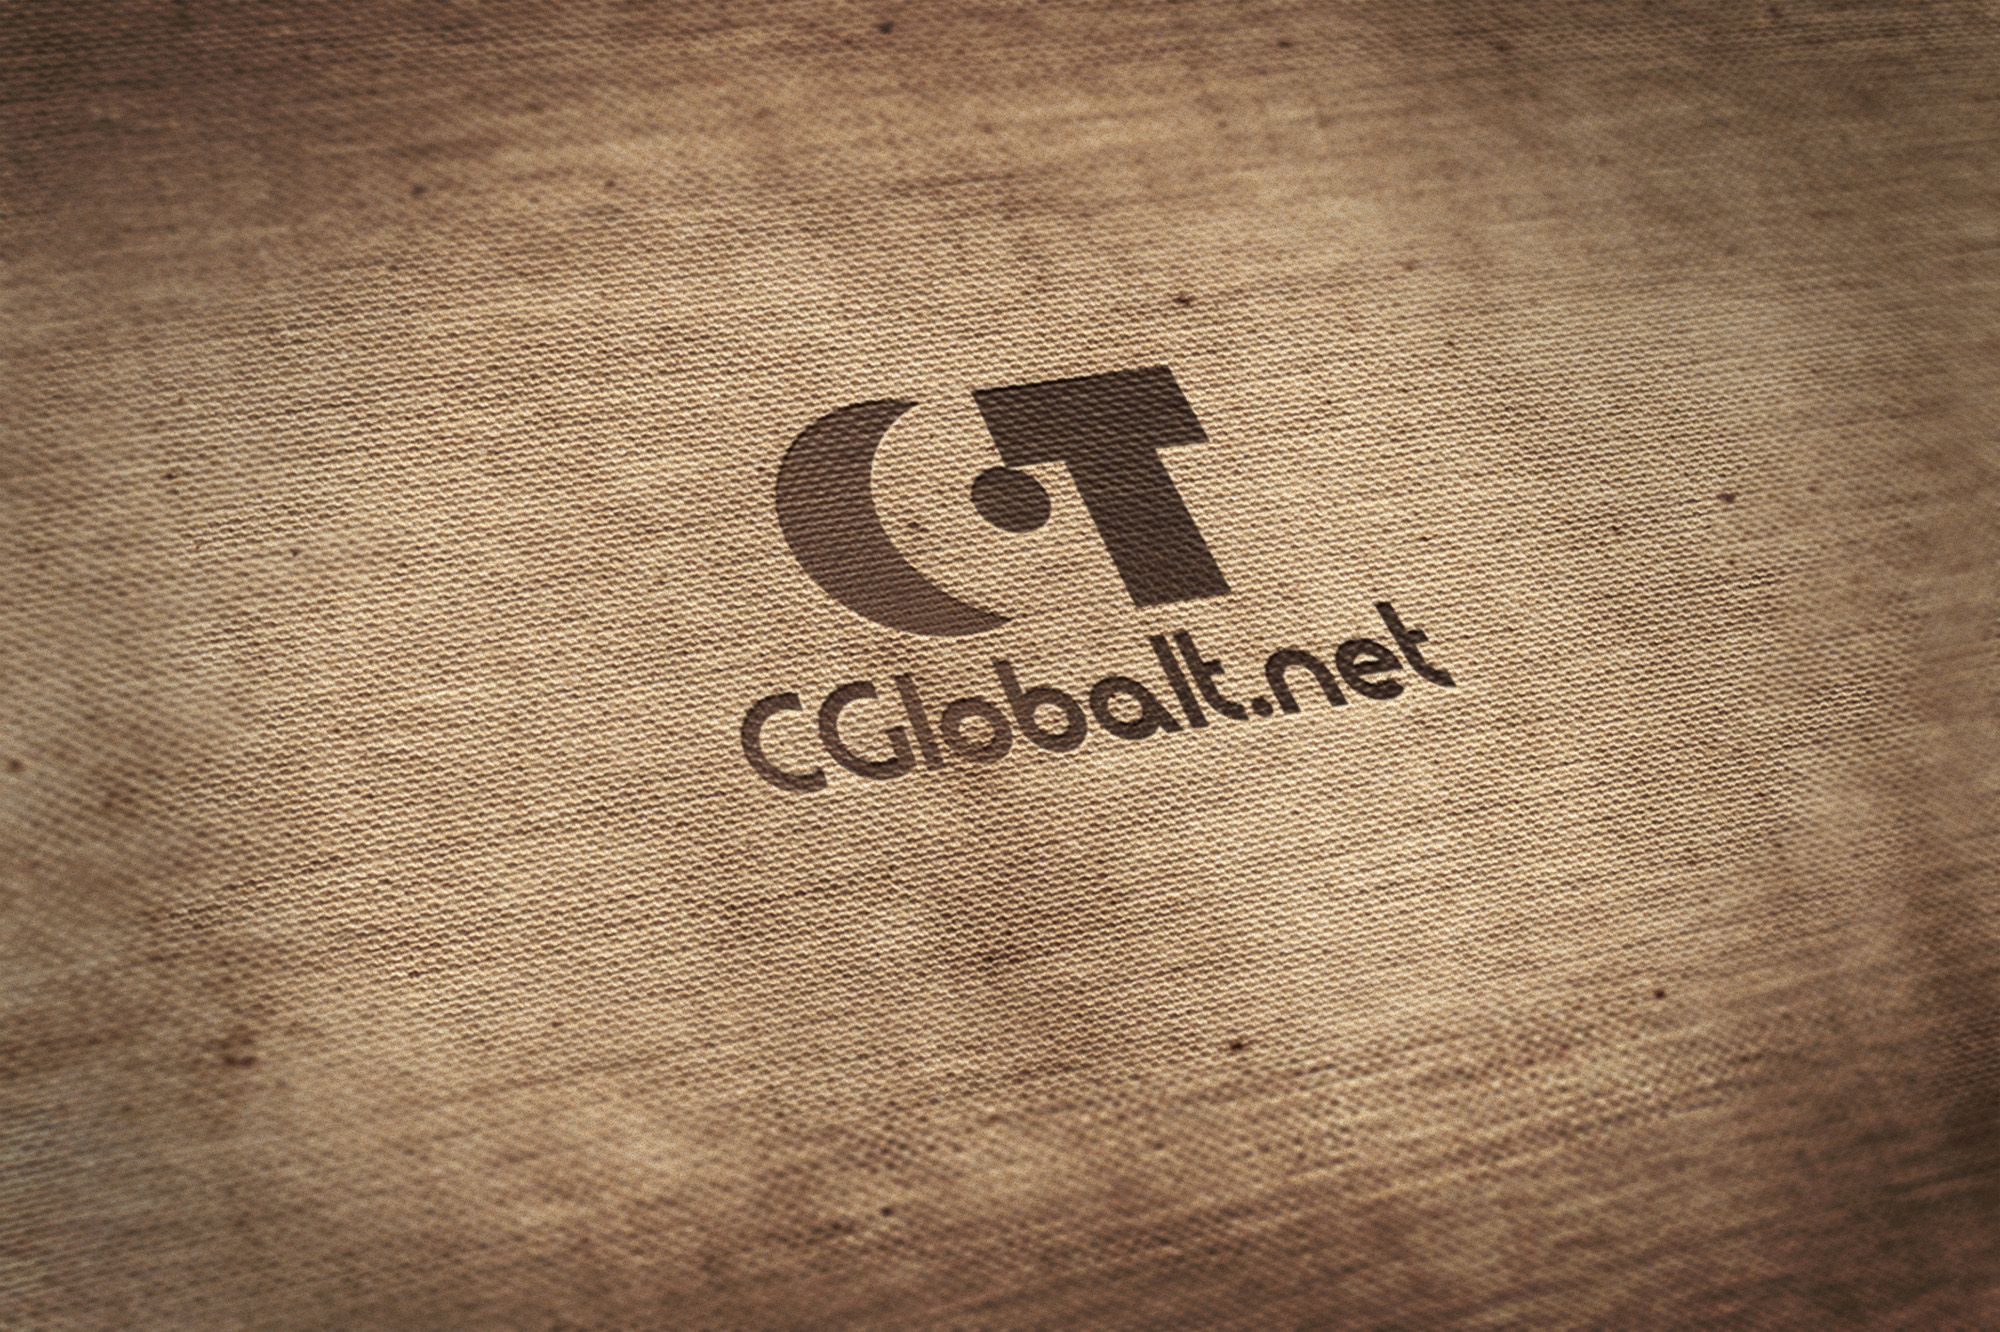 Логотип для CGlobalt - дизайнер IGOR-GOR